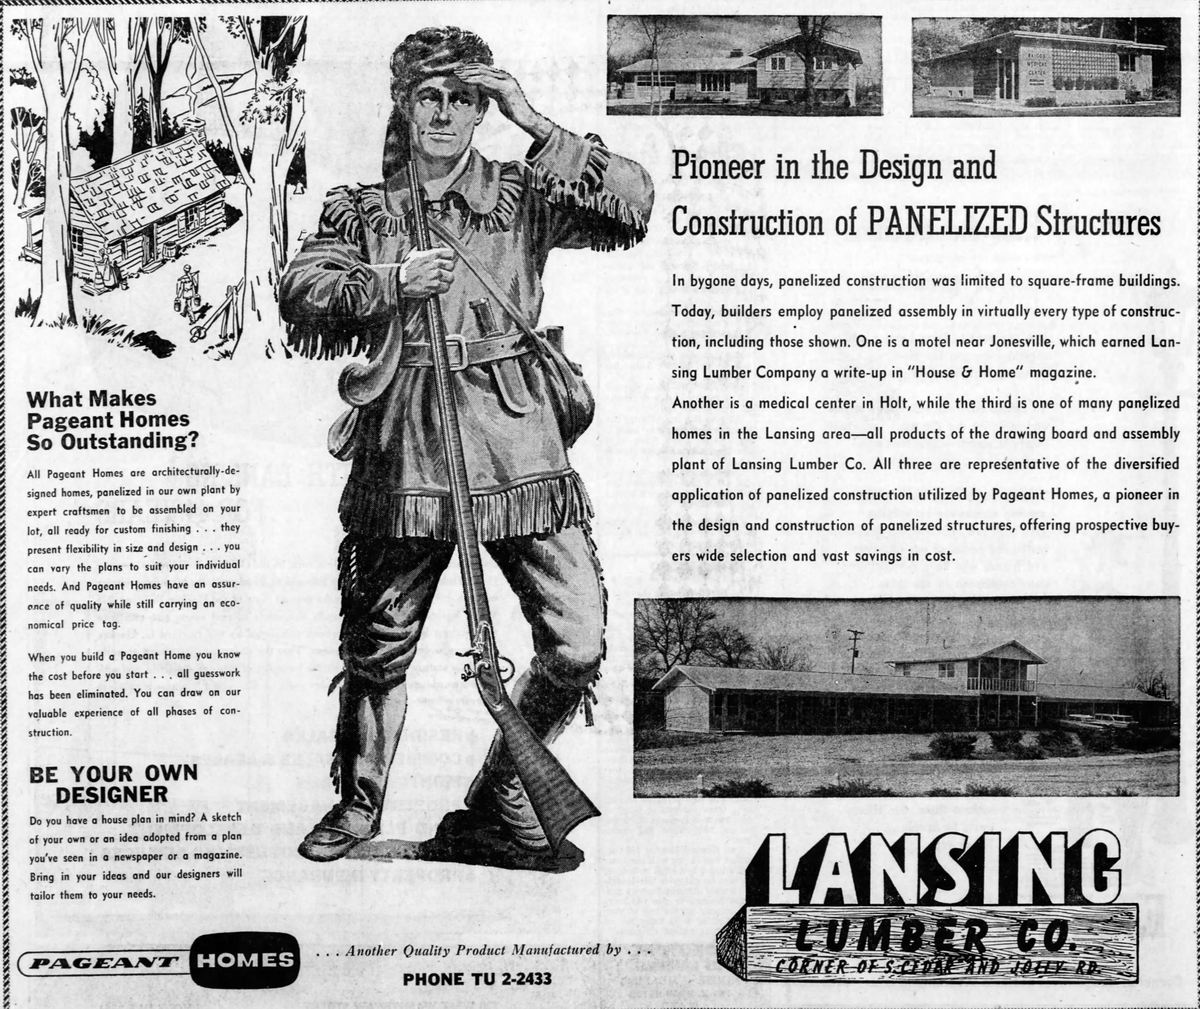 Pinecrest Motel (Americas Best Value Inn) - Feb 17 1963 Ad For Construction Panels